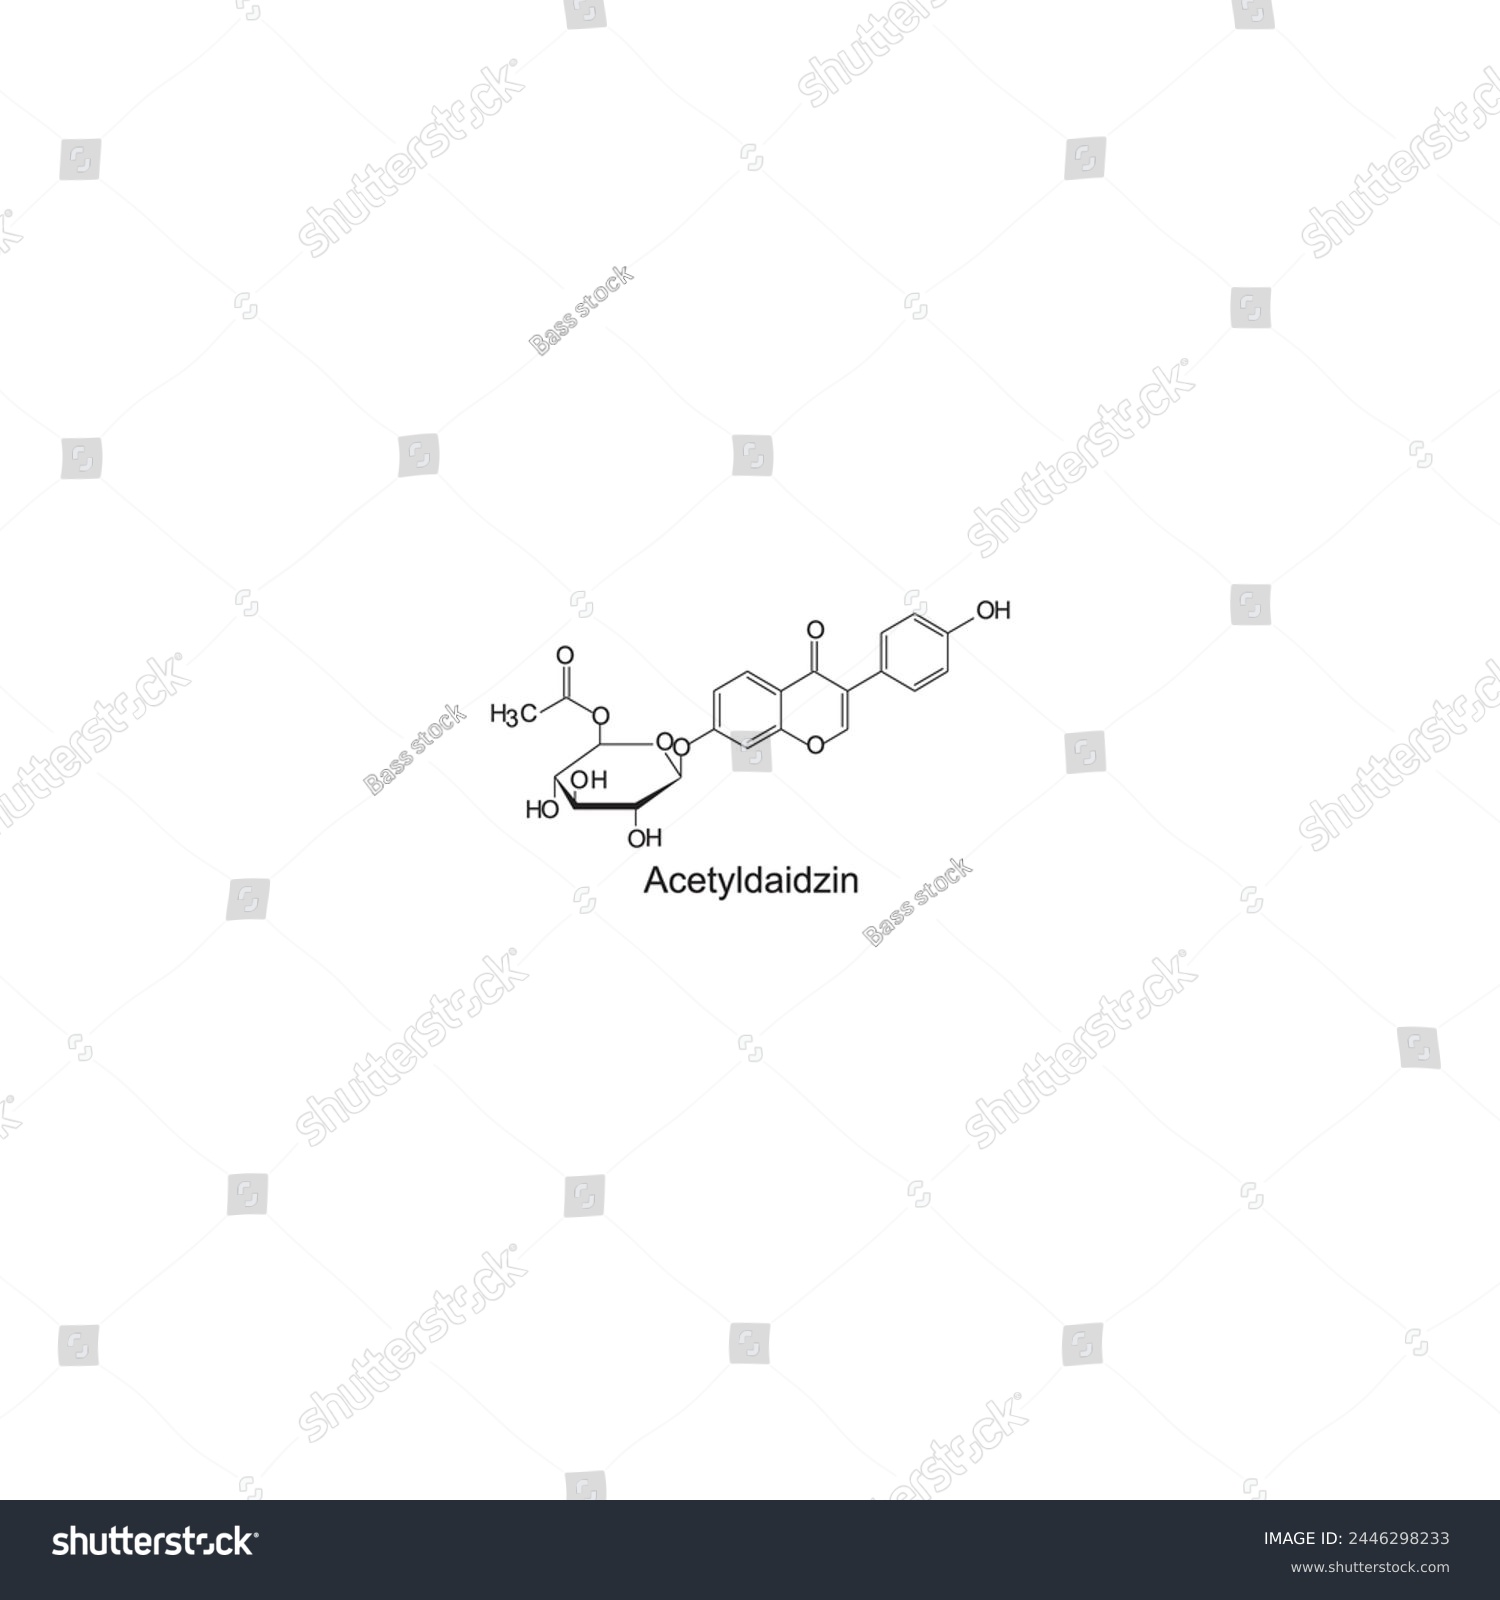 SVG of Acetyldaidzin skeletal structure diagram.Isoflavanone compound molecule scientific illustration on white background. svg